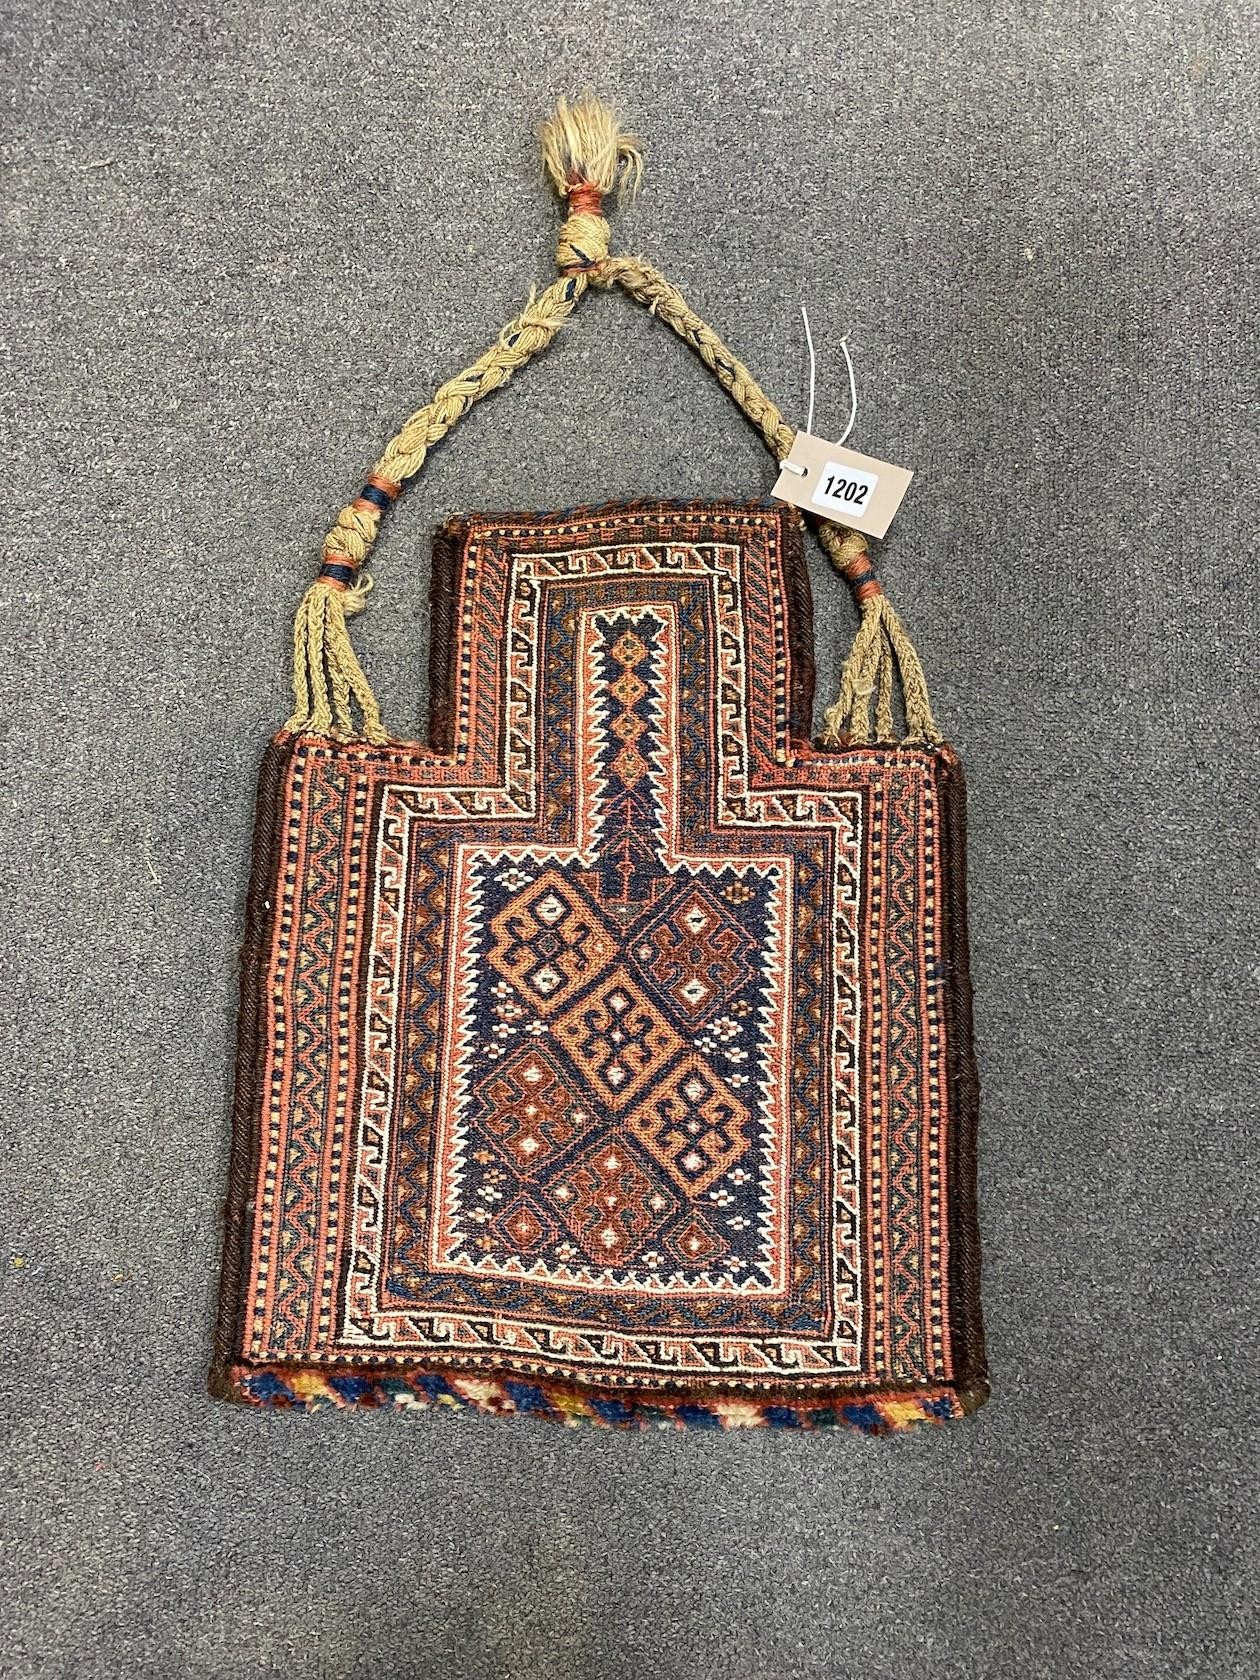 An Afghan polychrome salt bag, 36 x 44cm